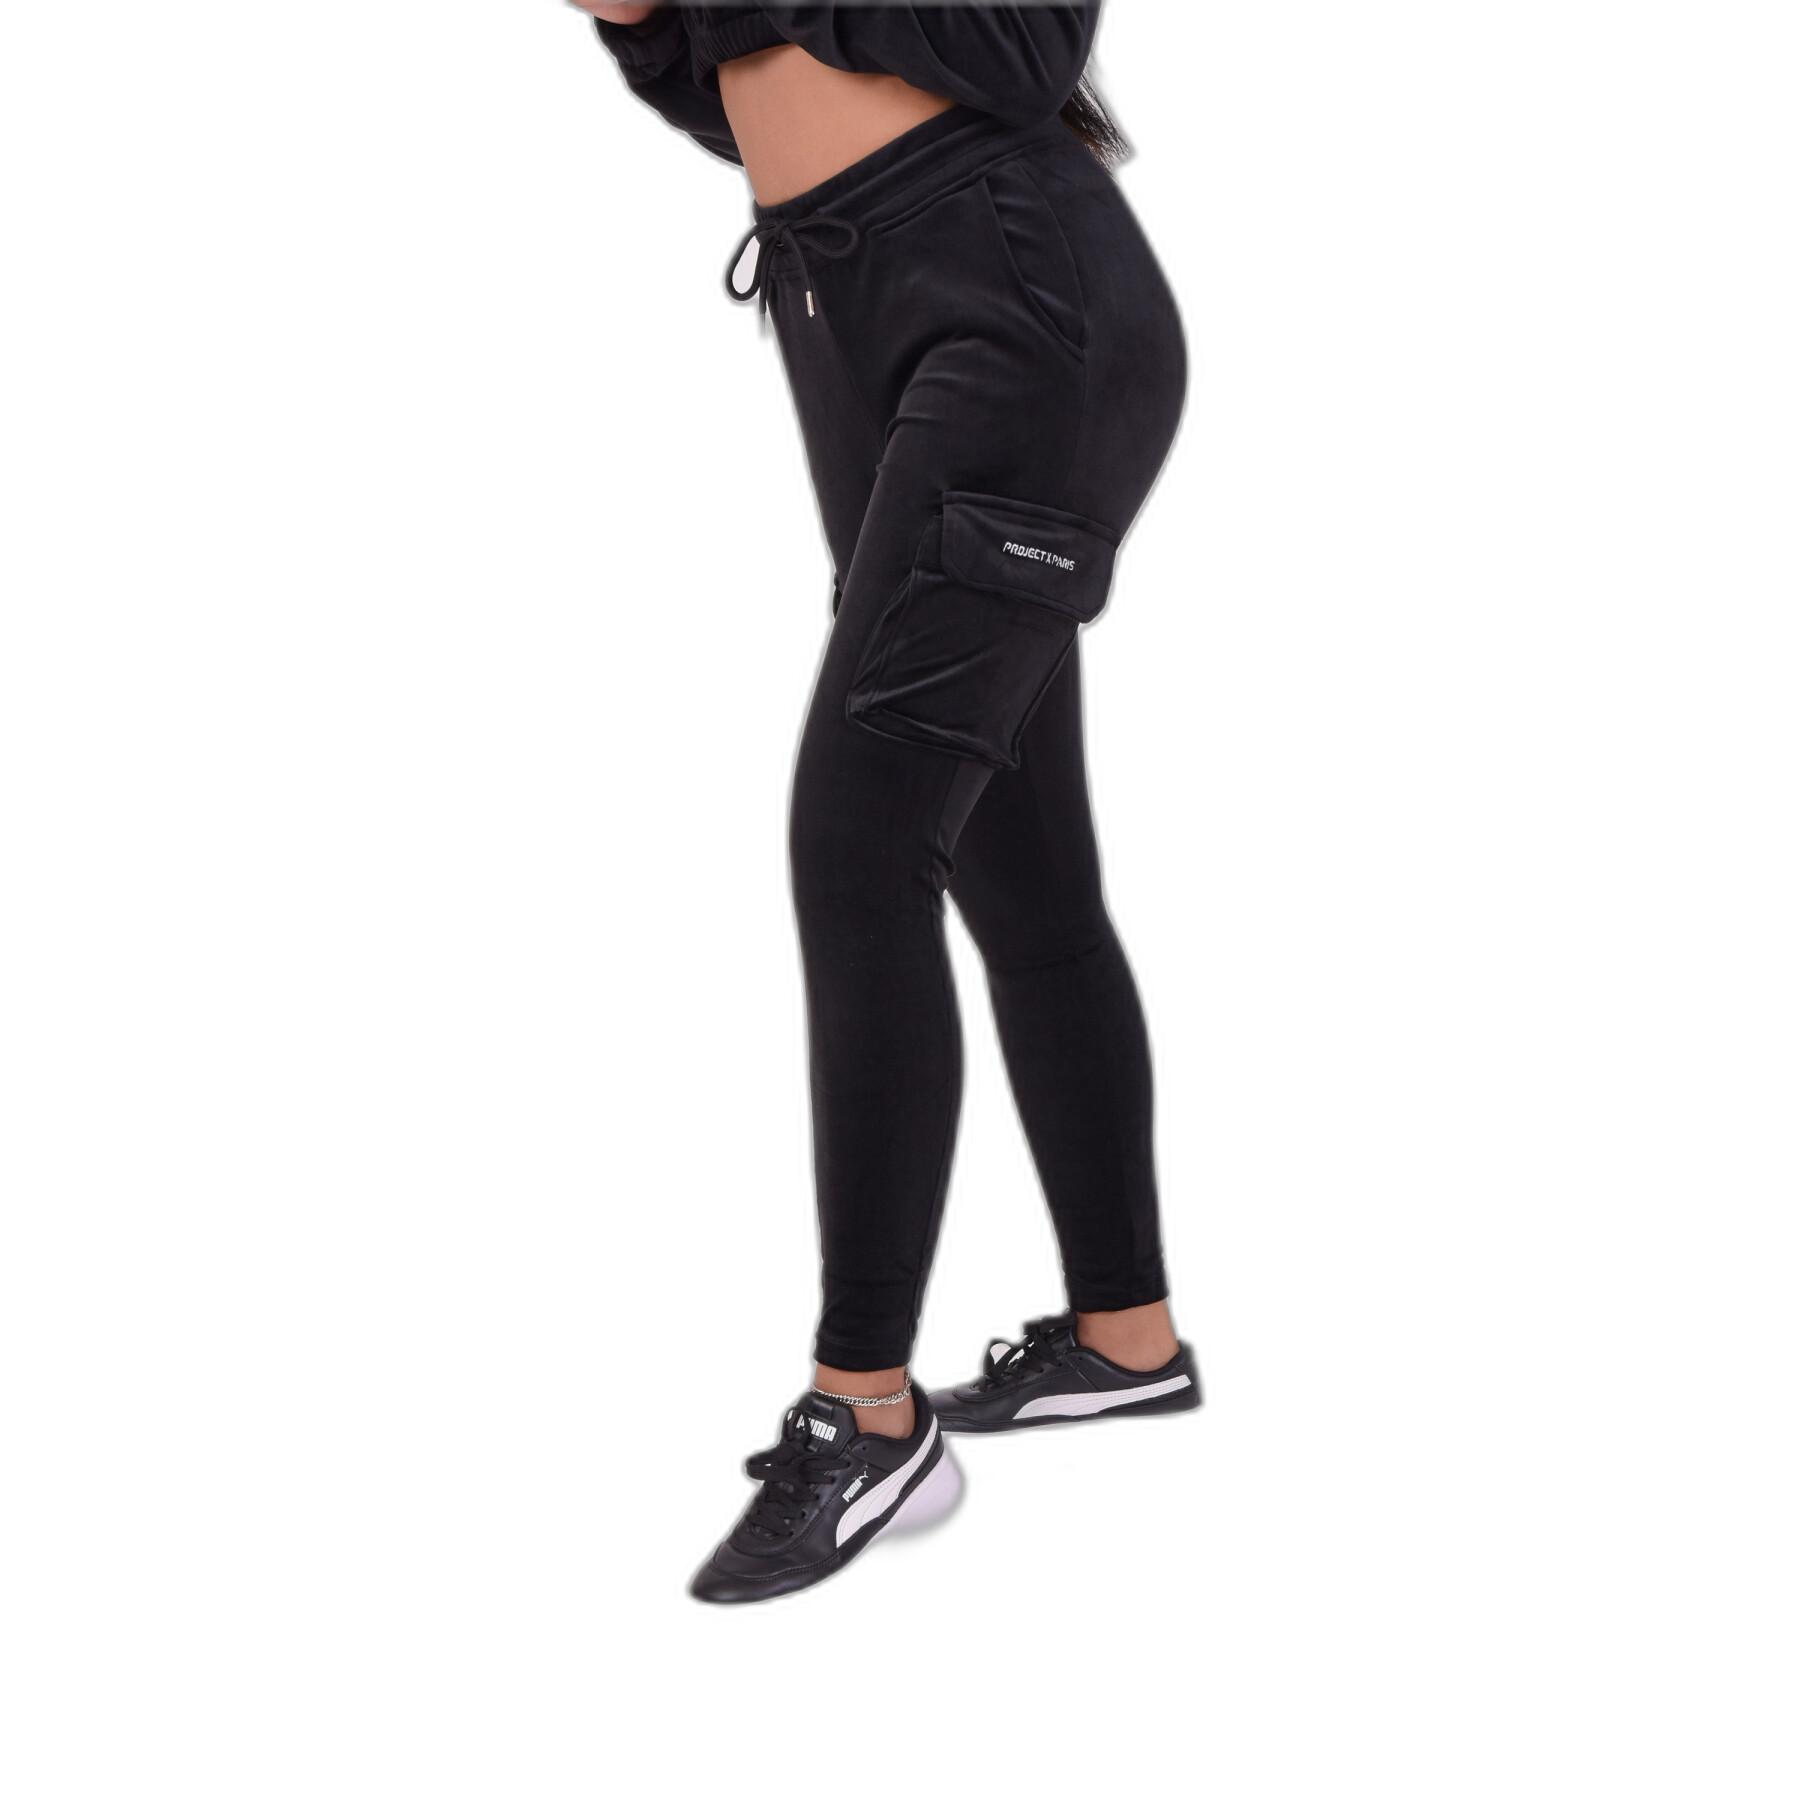 Women's velvet jogging suit Project X Paris